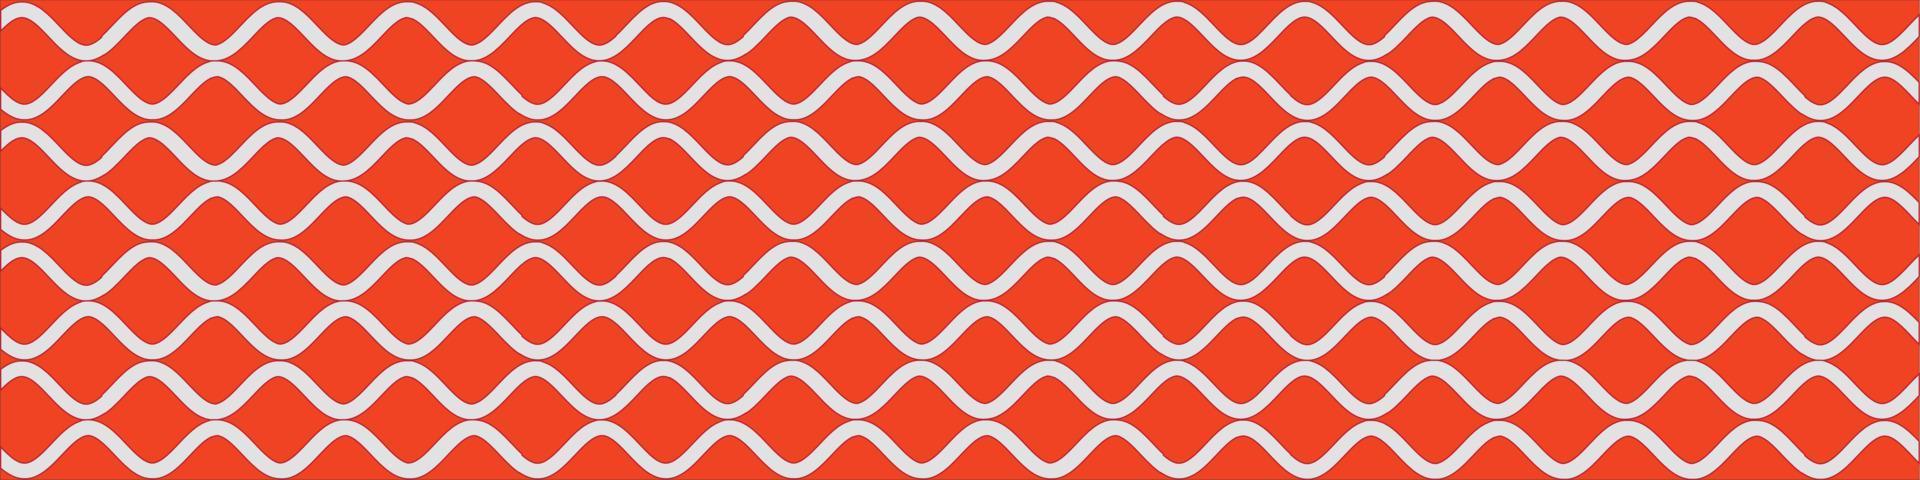 horizontaler Hintergrund aus geschwungenen weißen Linien orangefarbener Hintergrund vektor